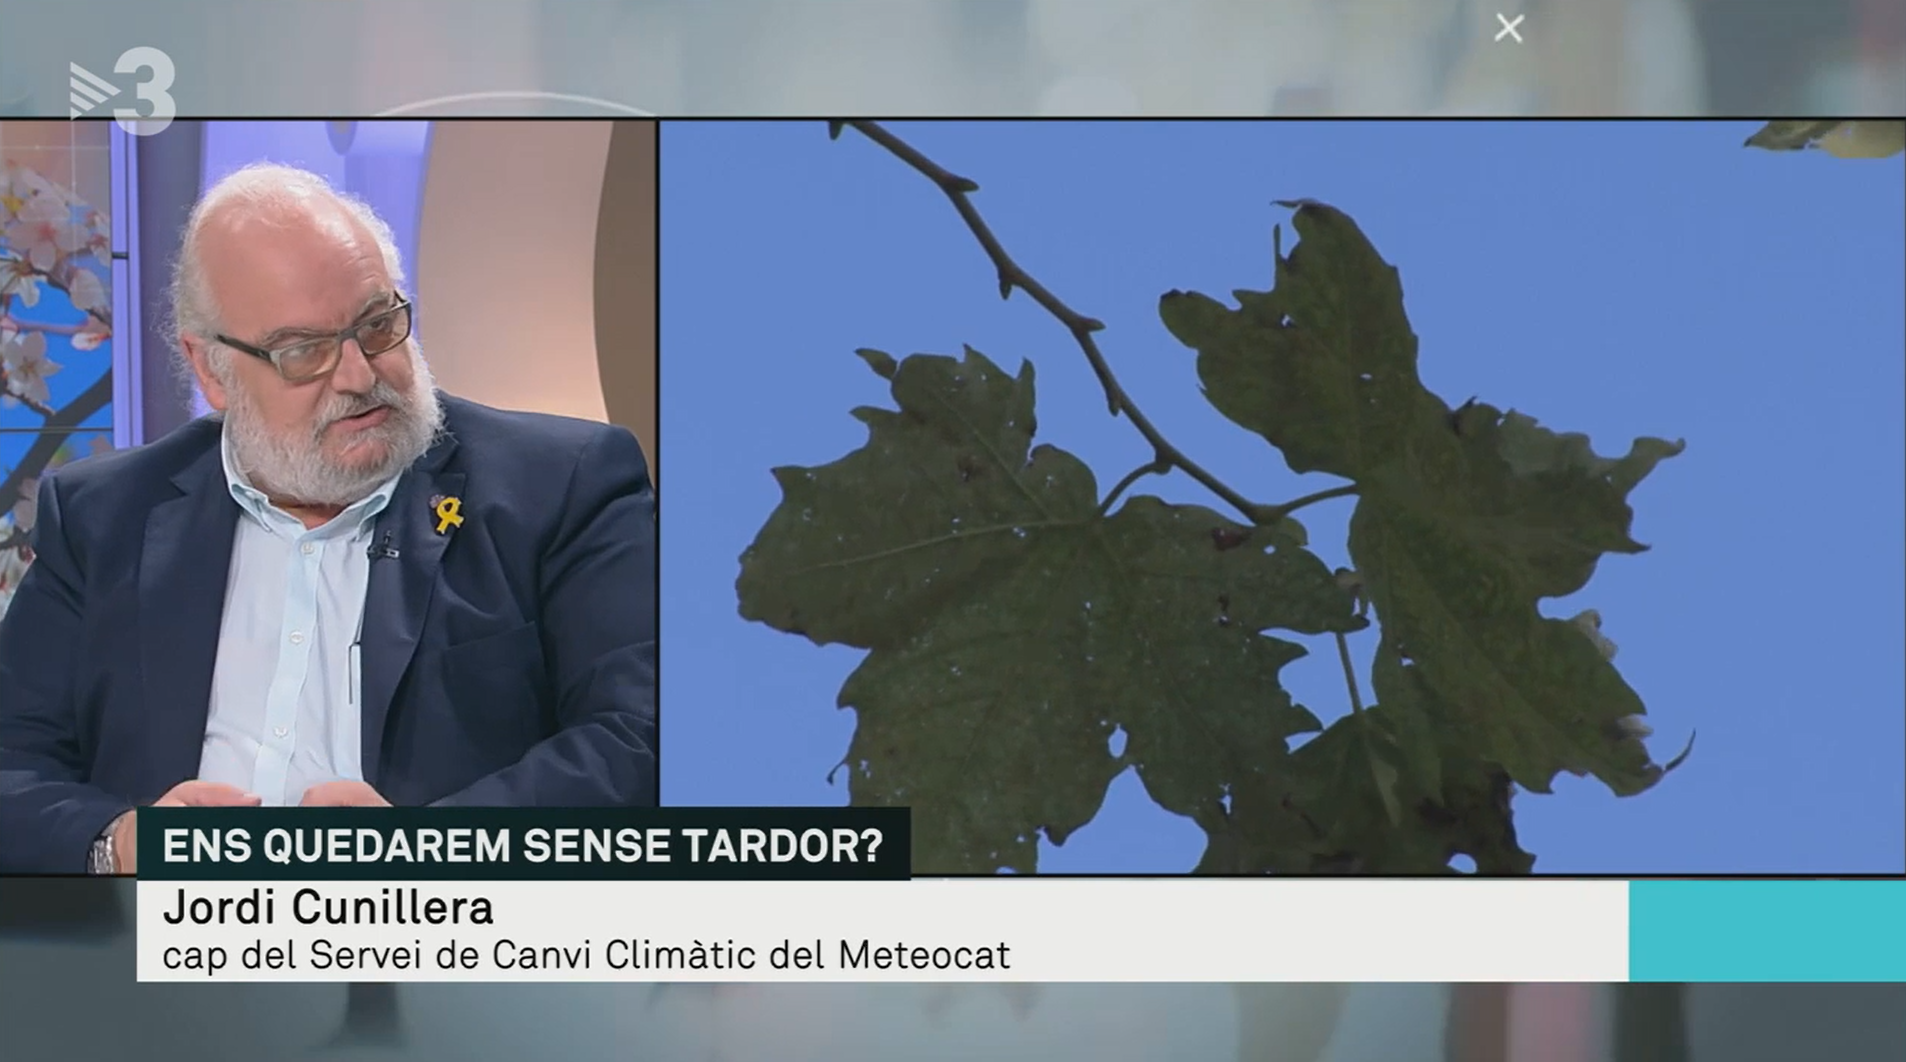 Jordi Cunillera, cap del Servei de Canvi Climàtic del Meteocat, parlant sobre fenologia i RitmeNatura als Matins de TV3. Font: Corporació Catalana de Mitjans Audiovisuals